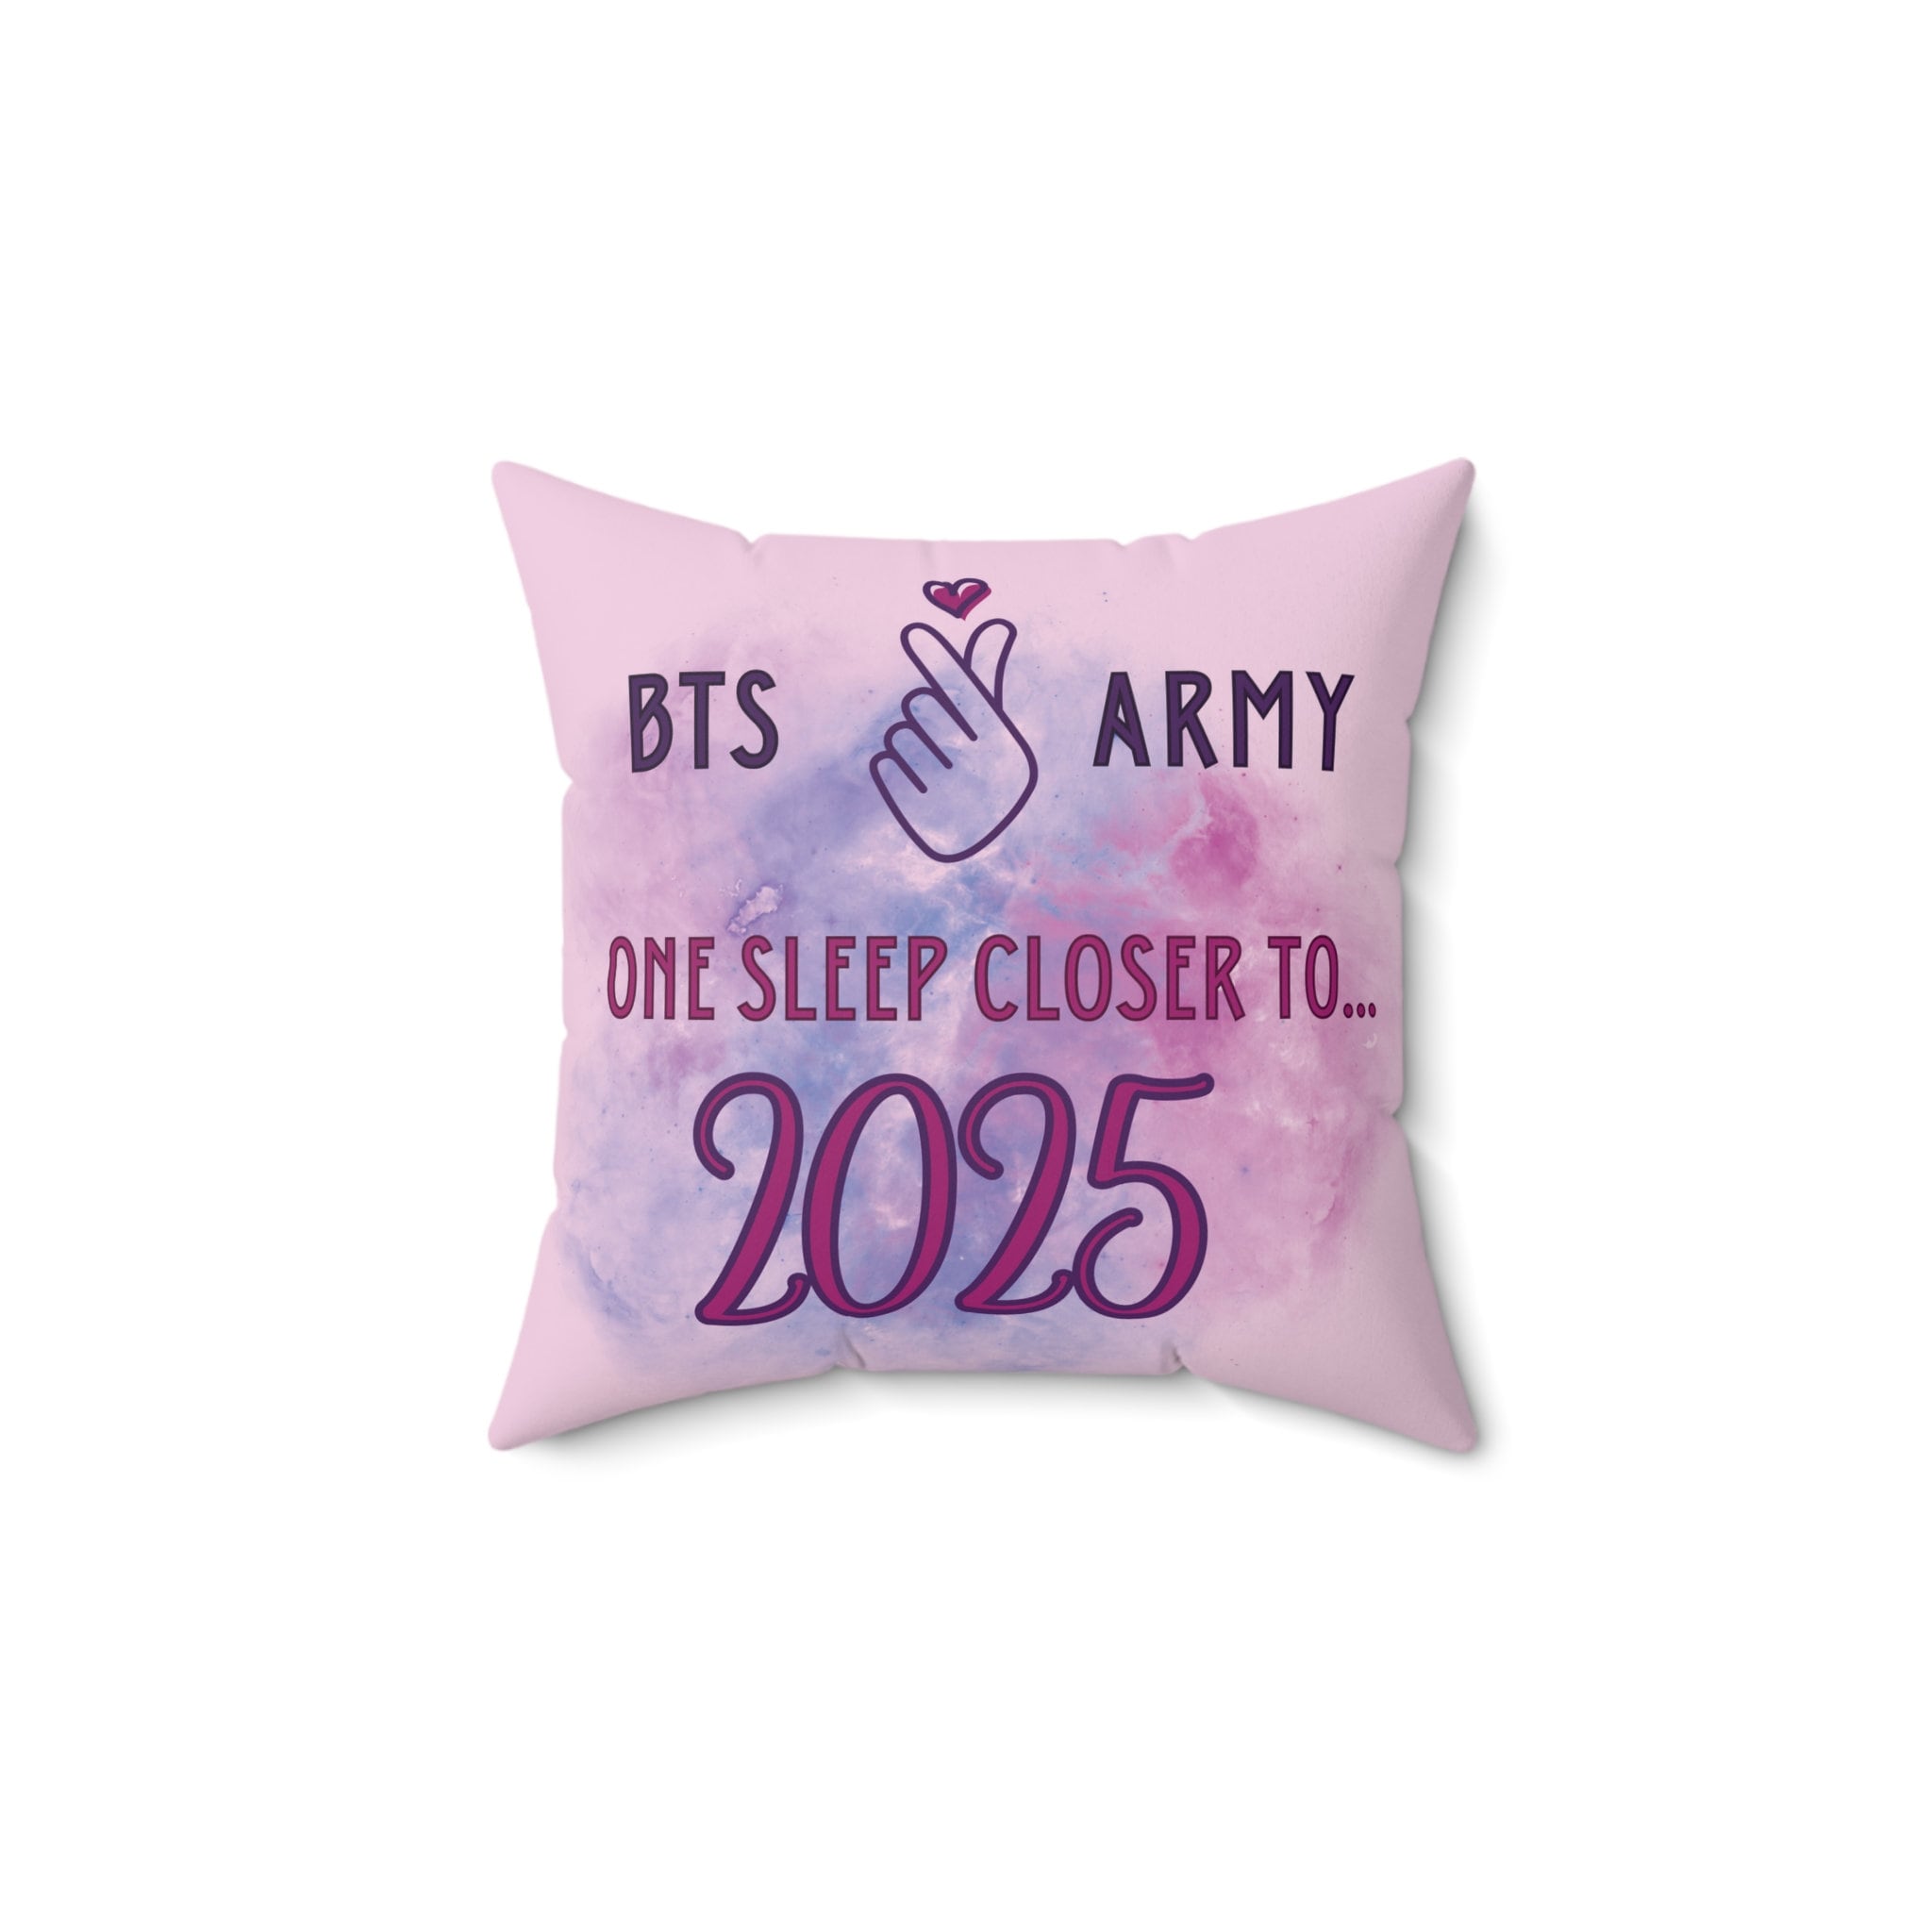 23 BTS Pillowcases ideas  bts, bts wings, bts merch